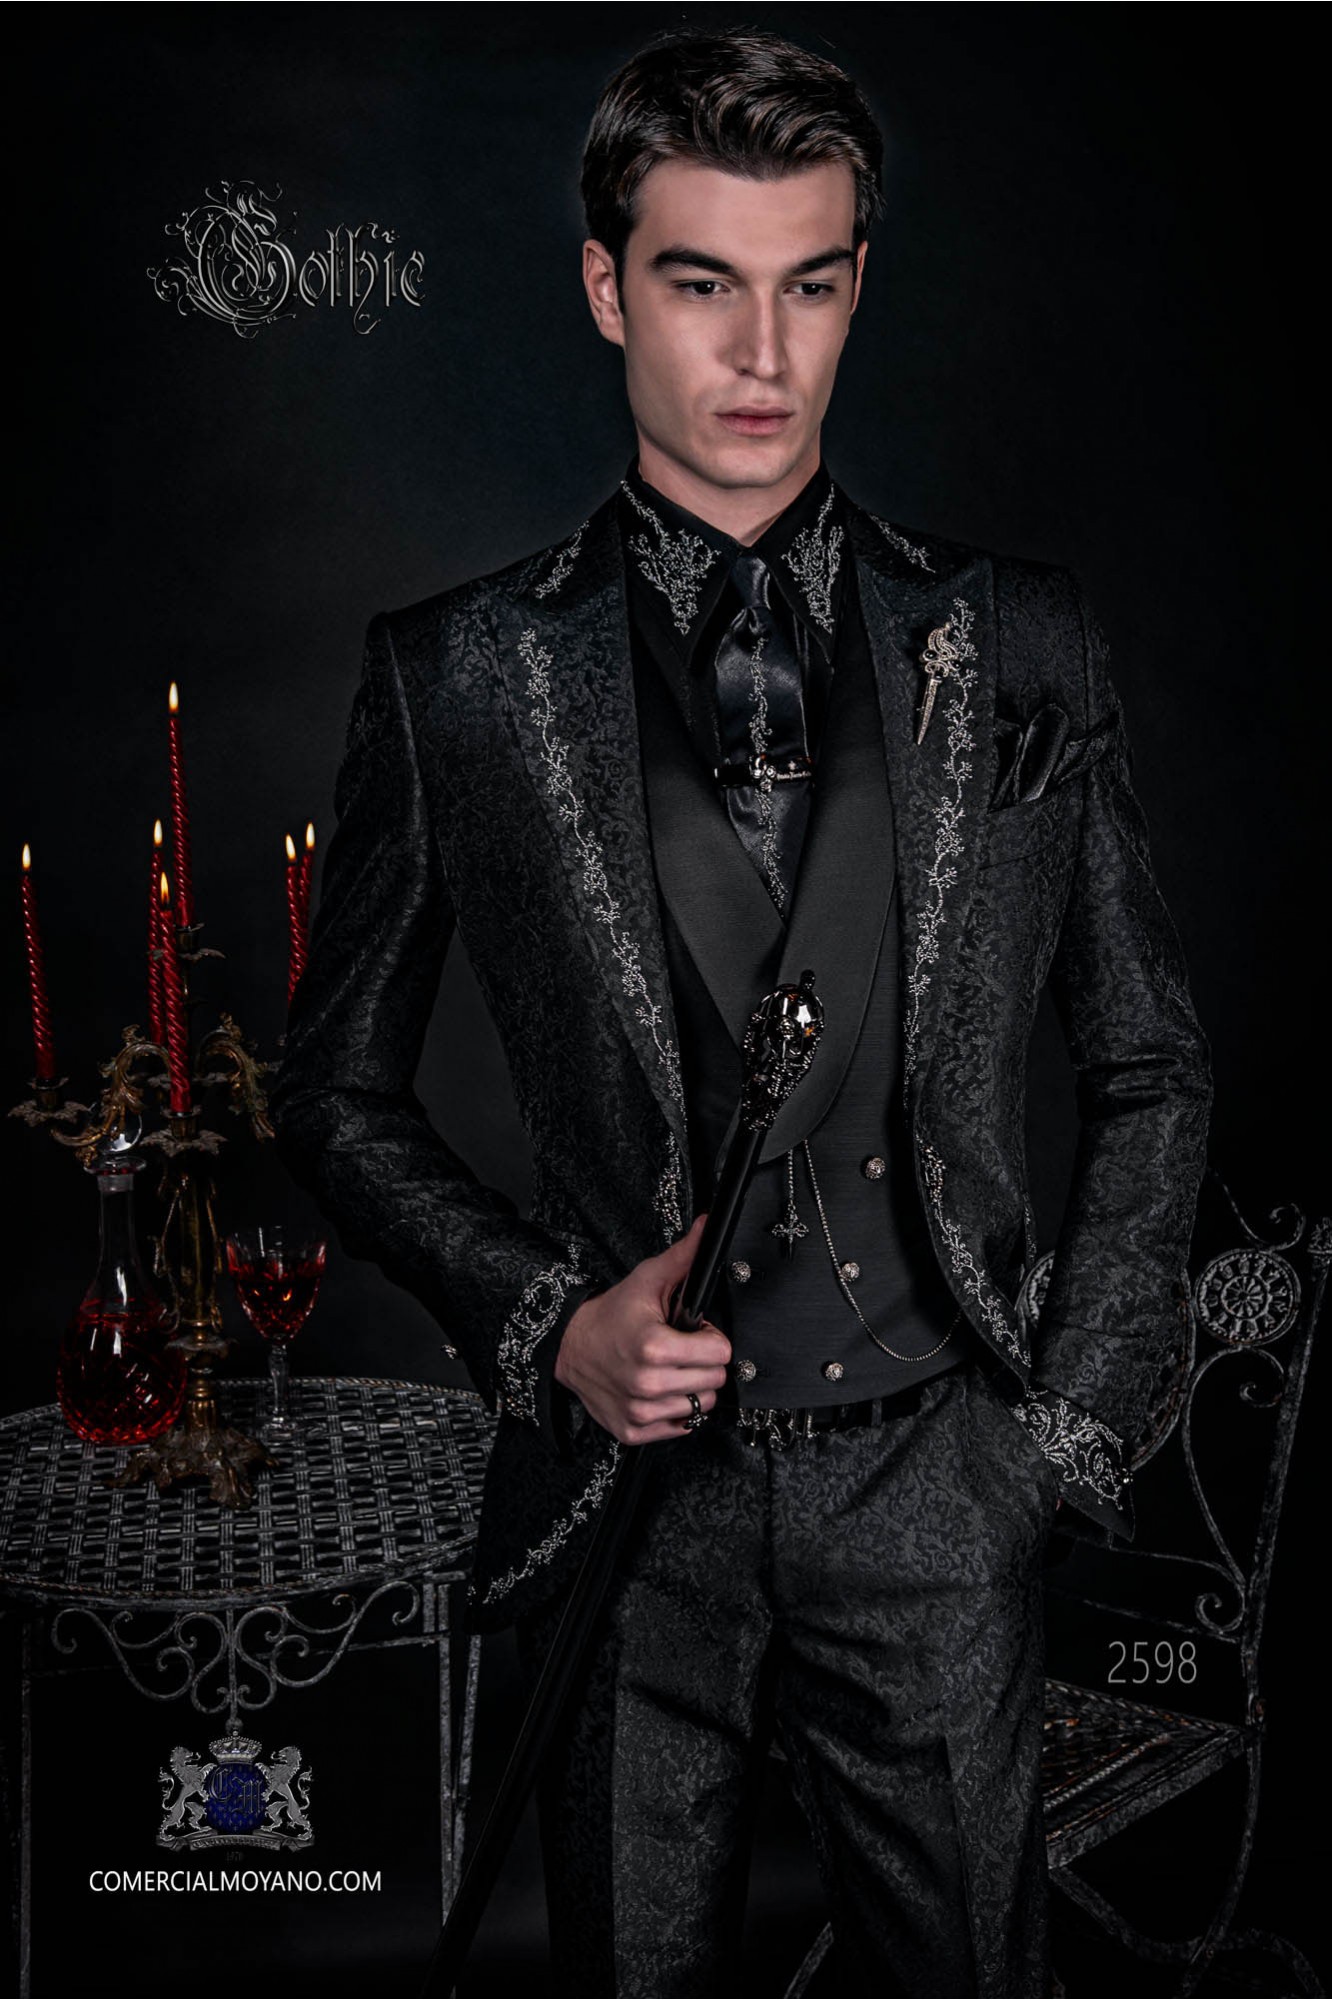 Traje de novio de época gótico brocado negro con bordado floral plata modelo: 2598 Mario Moyano colección Barroco